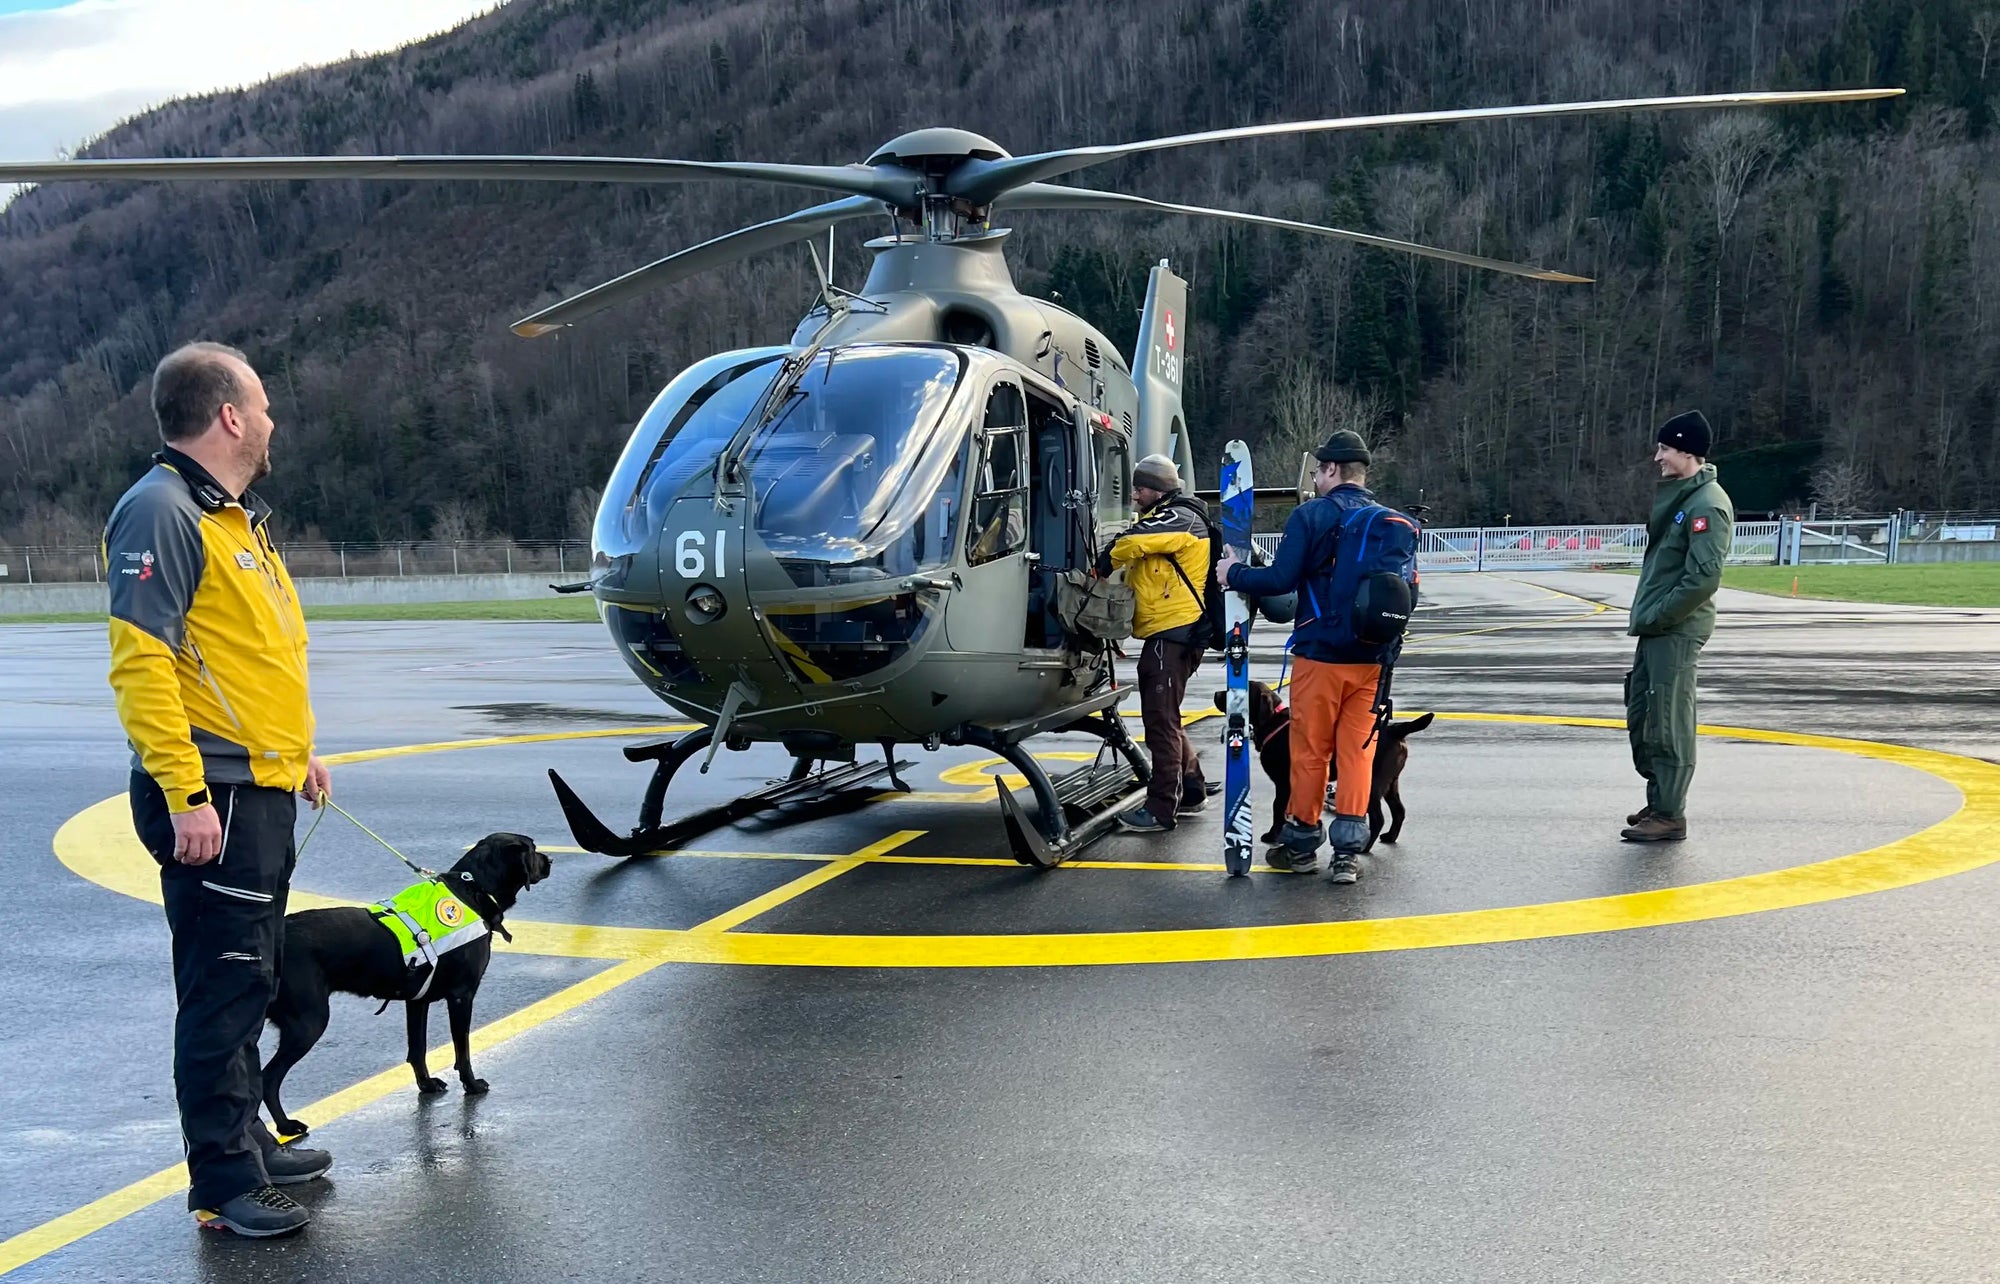 Rettunghunde in der Schweiz